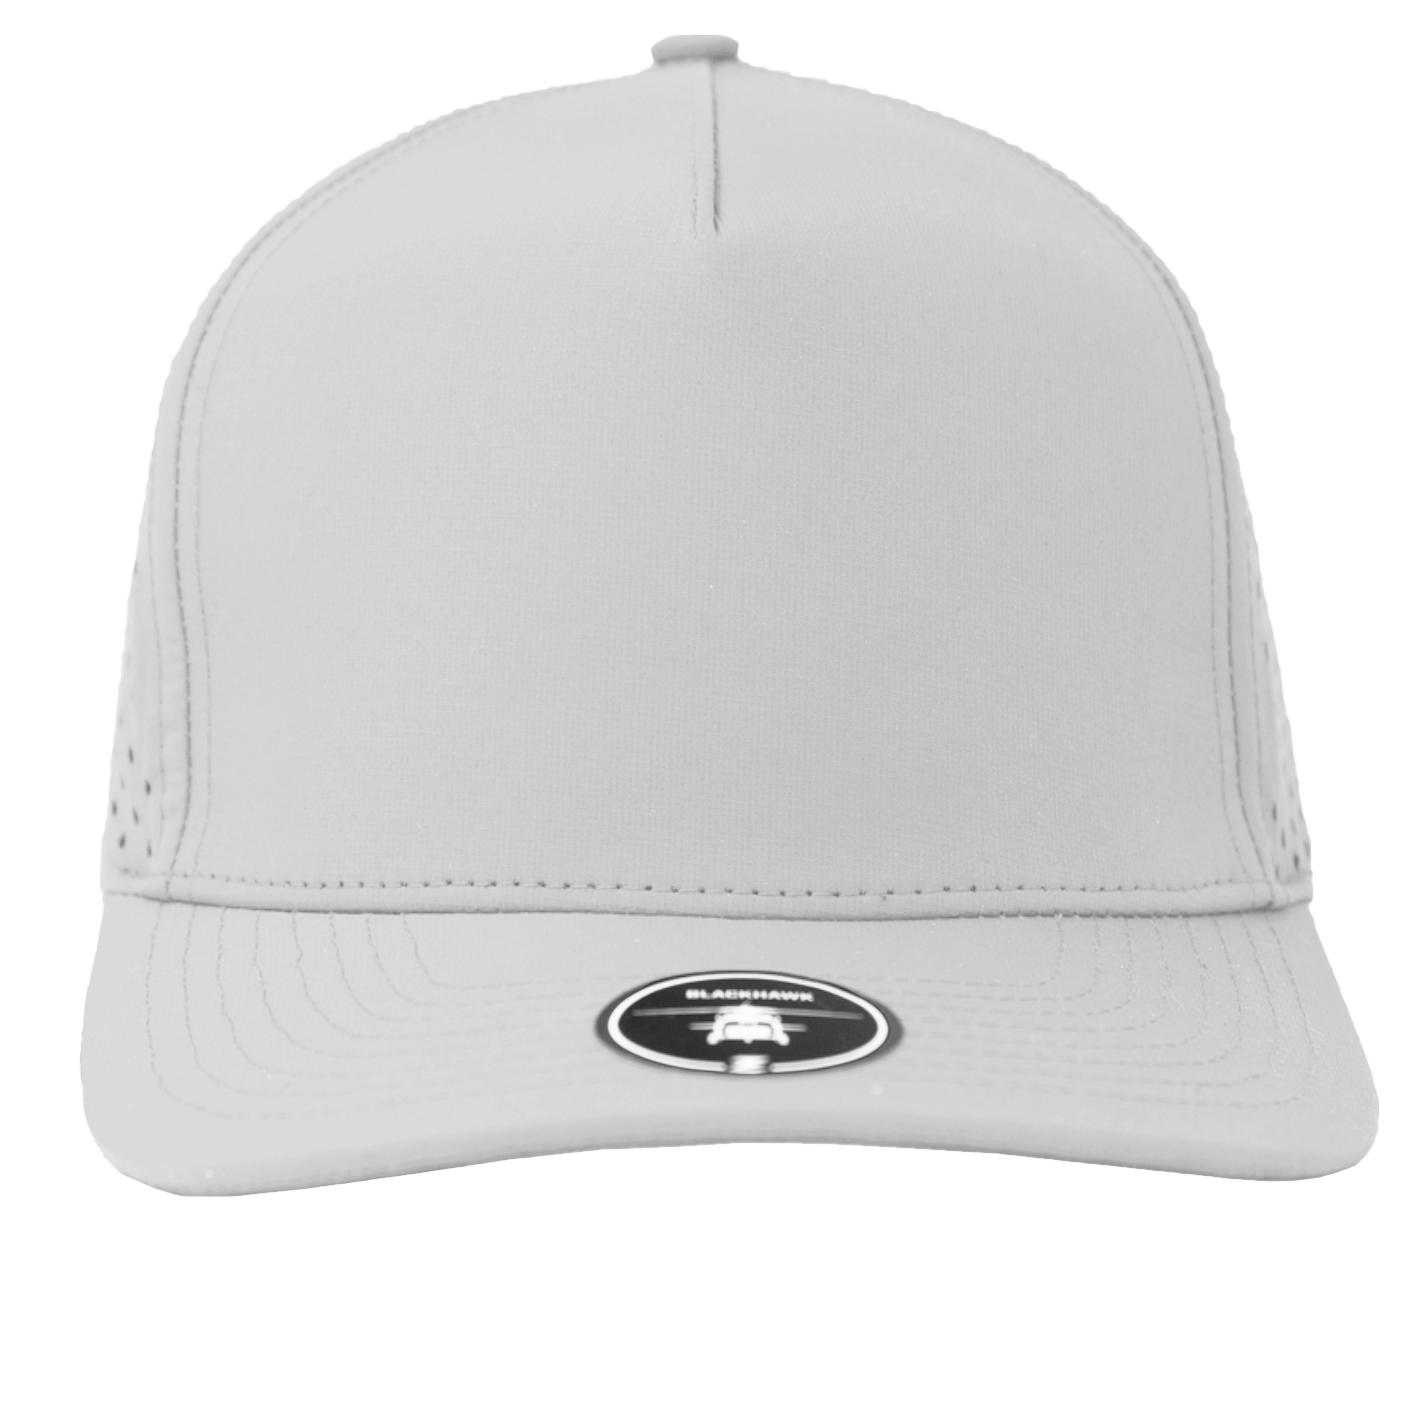 BLACKHAWK-Water Repellent hat-Zapped Headwear-OffWhite-Zapped Headwear